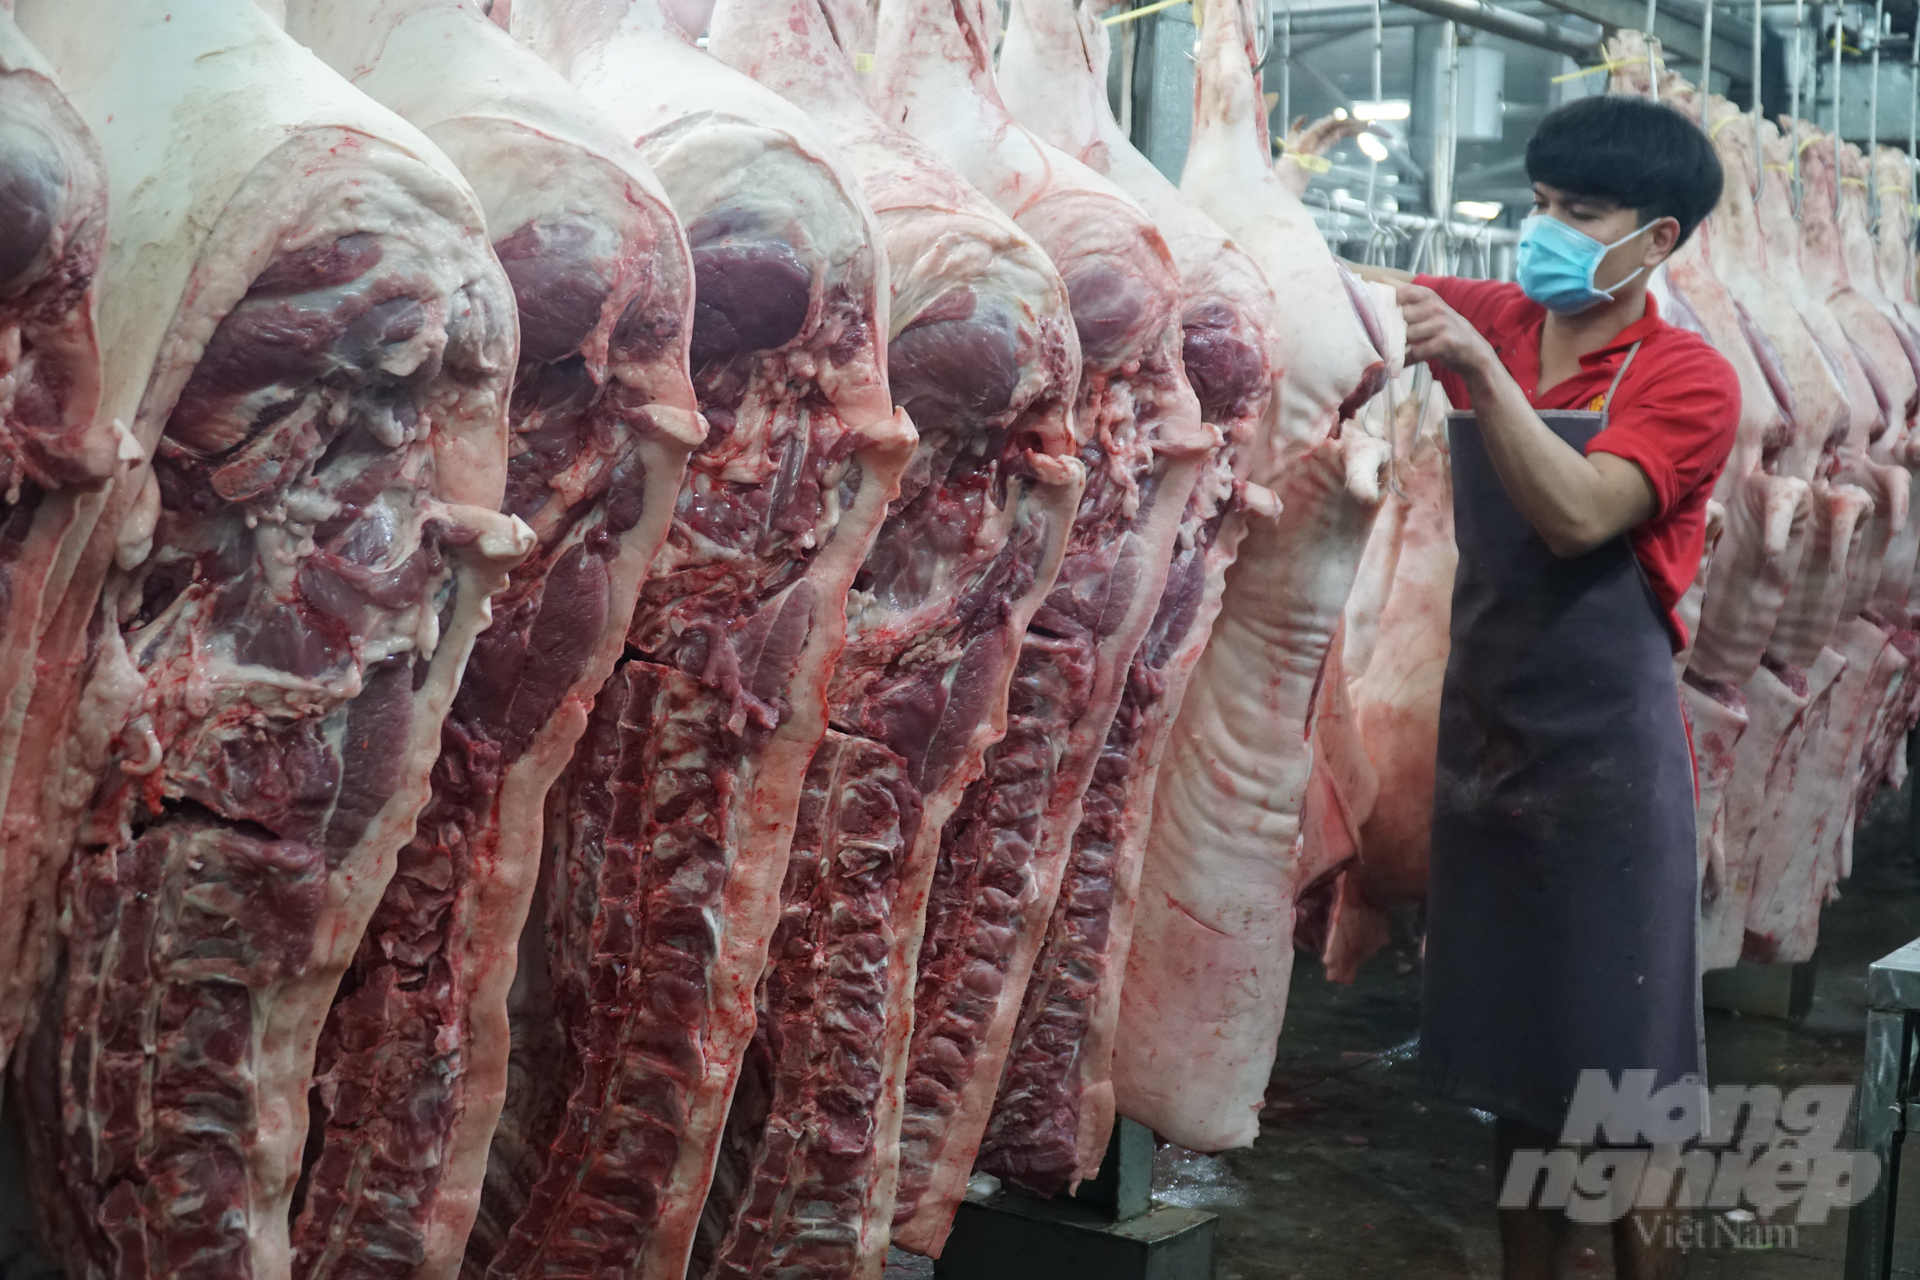 Sàn giao dịch thịt heo giúp cho người chăn nuôi được định hướng sản xuất phù hợp thị trường. Ảnh: Nguyễn Thủy.